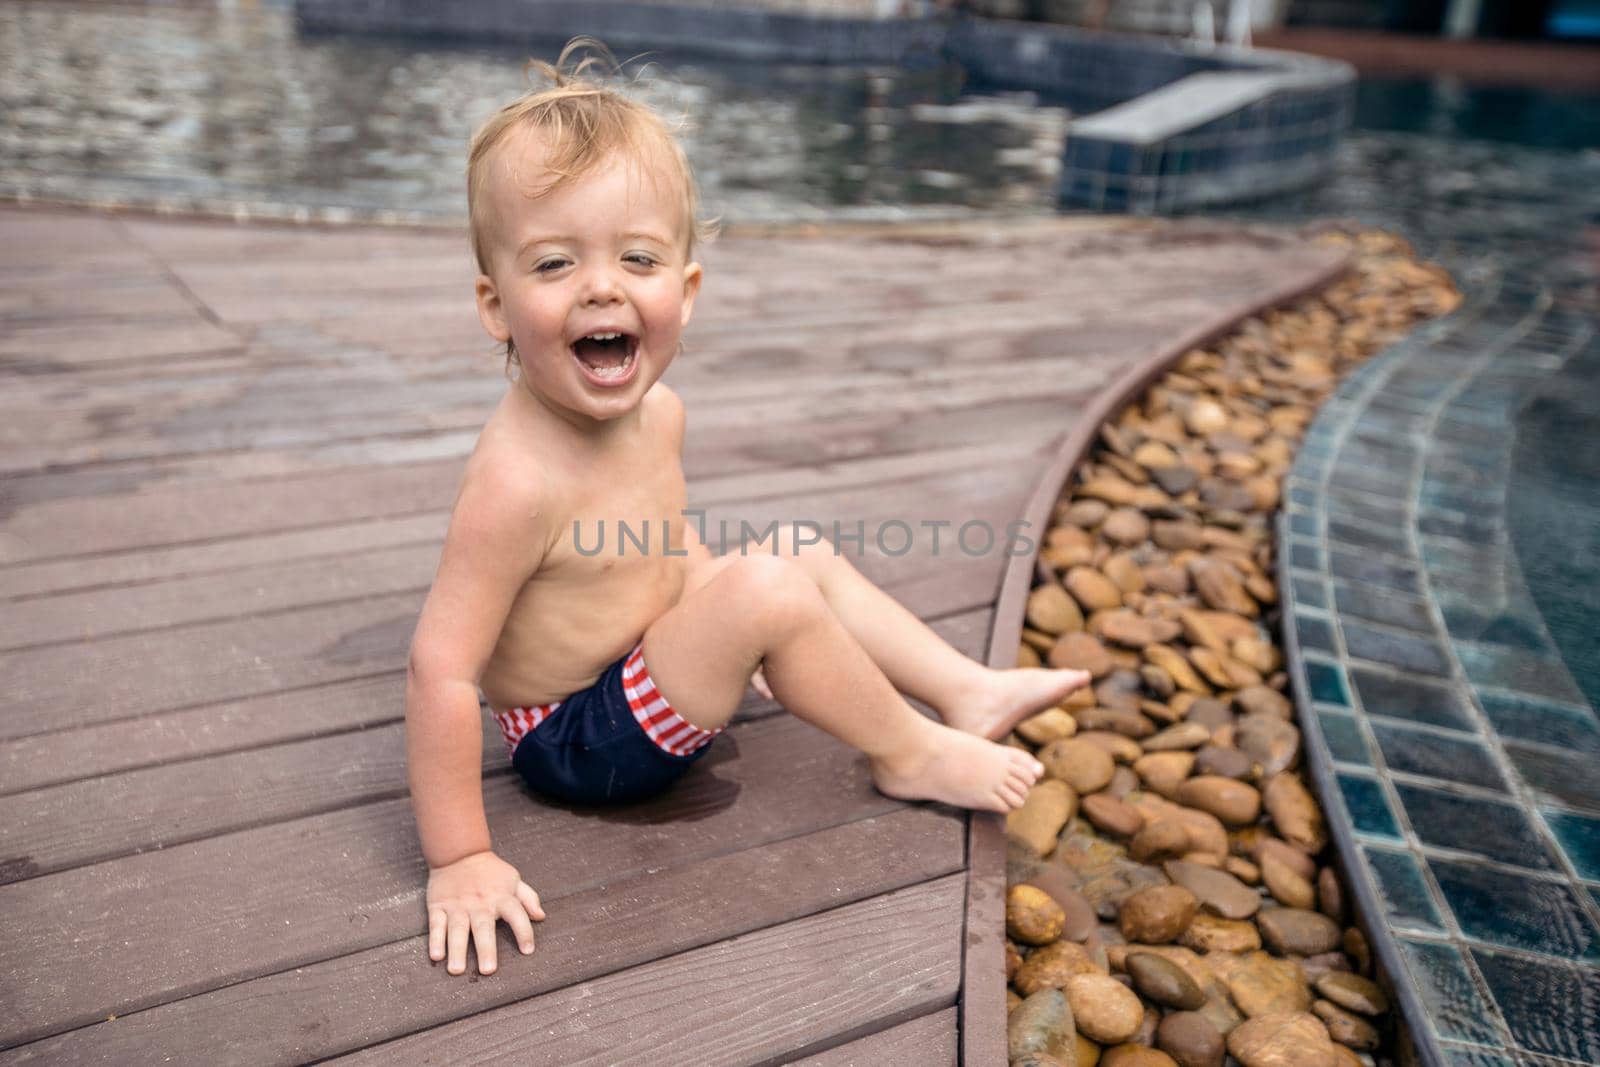 Little boy laughing on poolside by Demkat